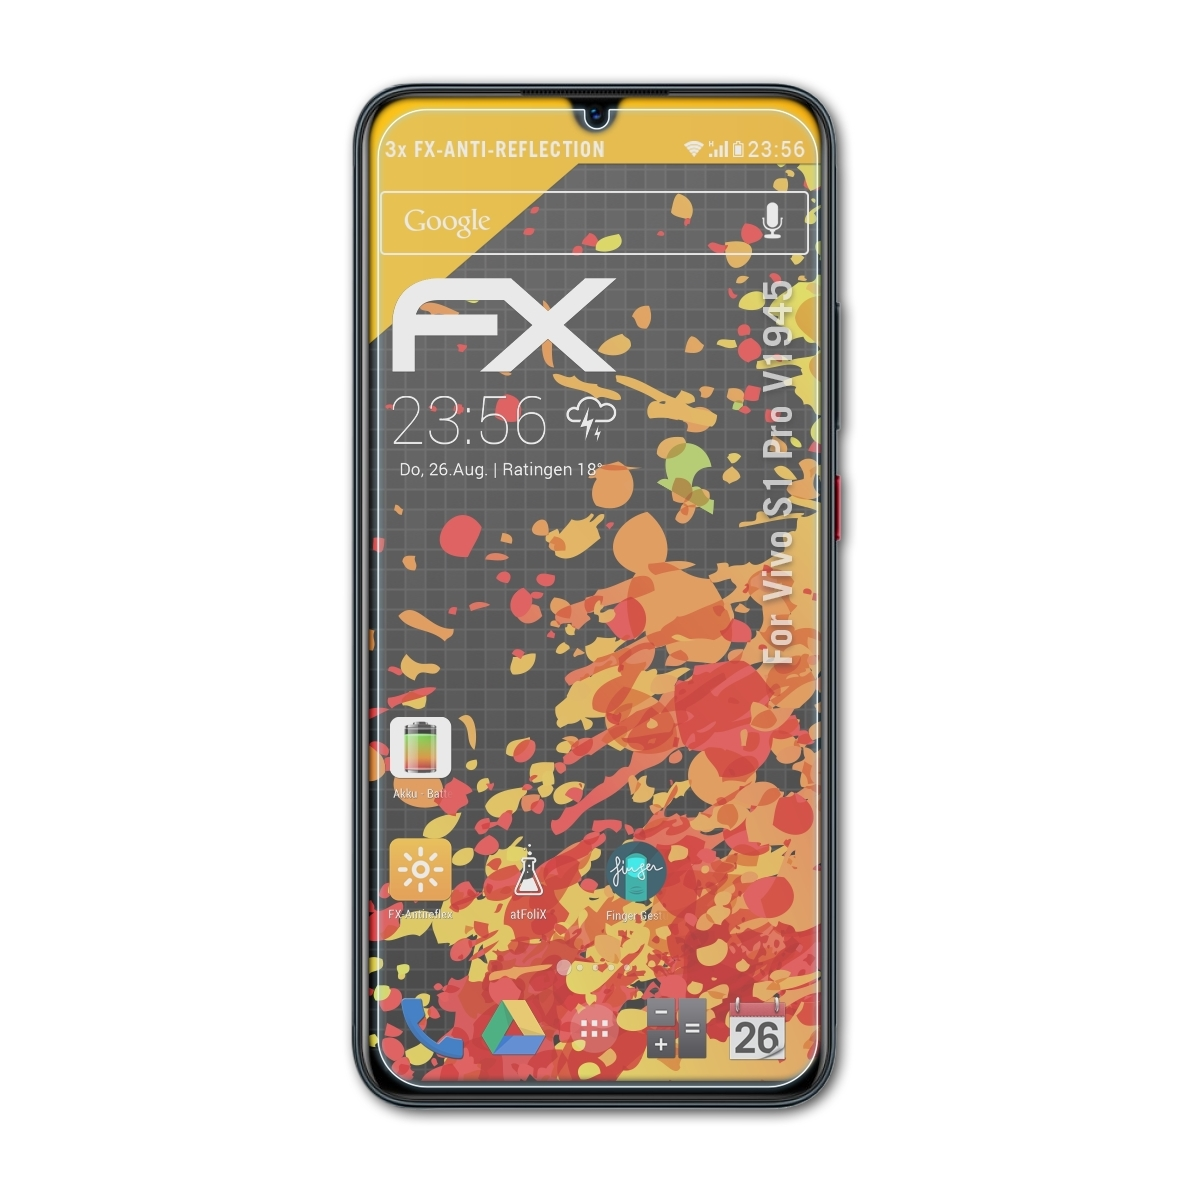 Pro Displayschutz(für FX-Antireflex Vivo (V1945)) 3x ATFOLIX S1